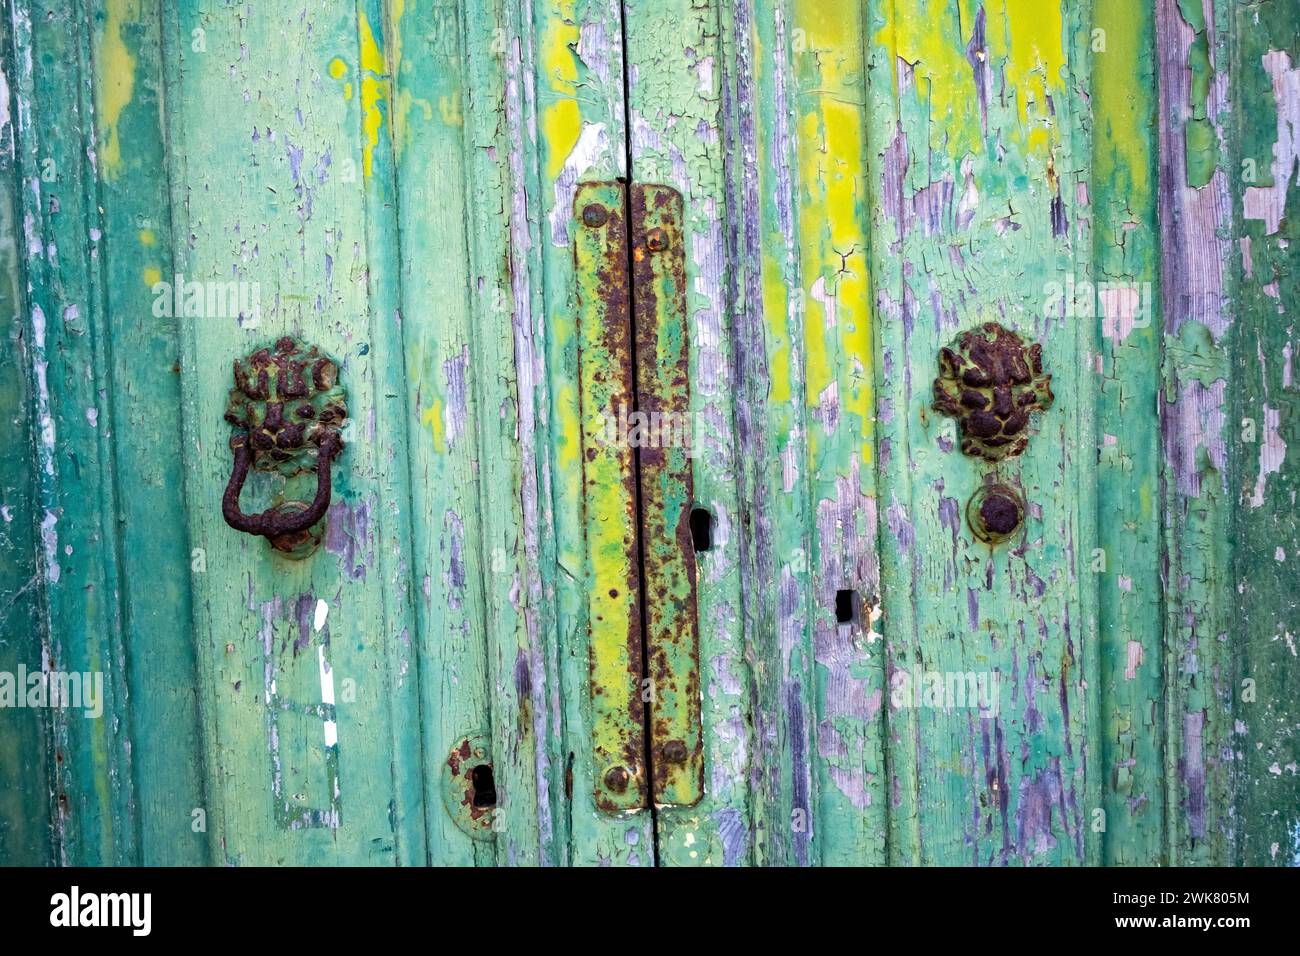 Abblätternde Farbe an einer alten Holztür in Malta Stockfoto